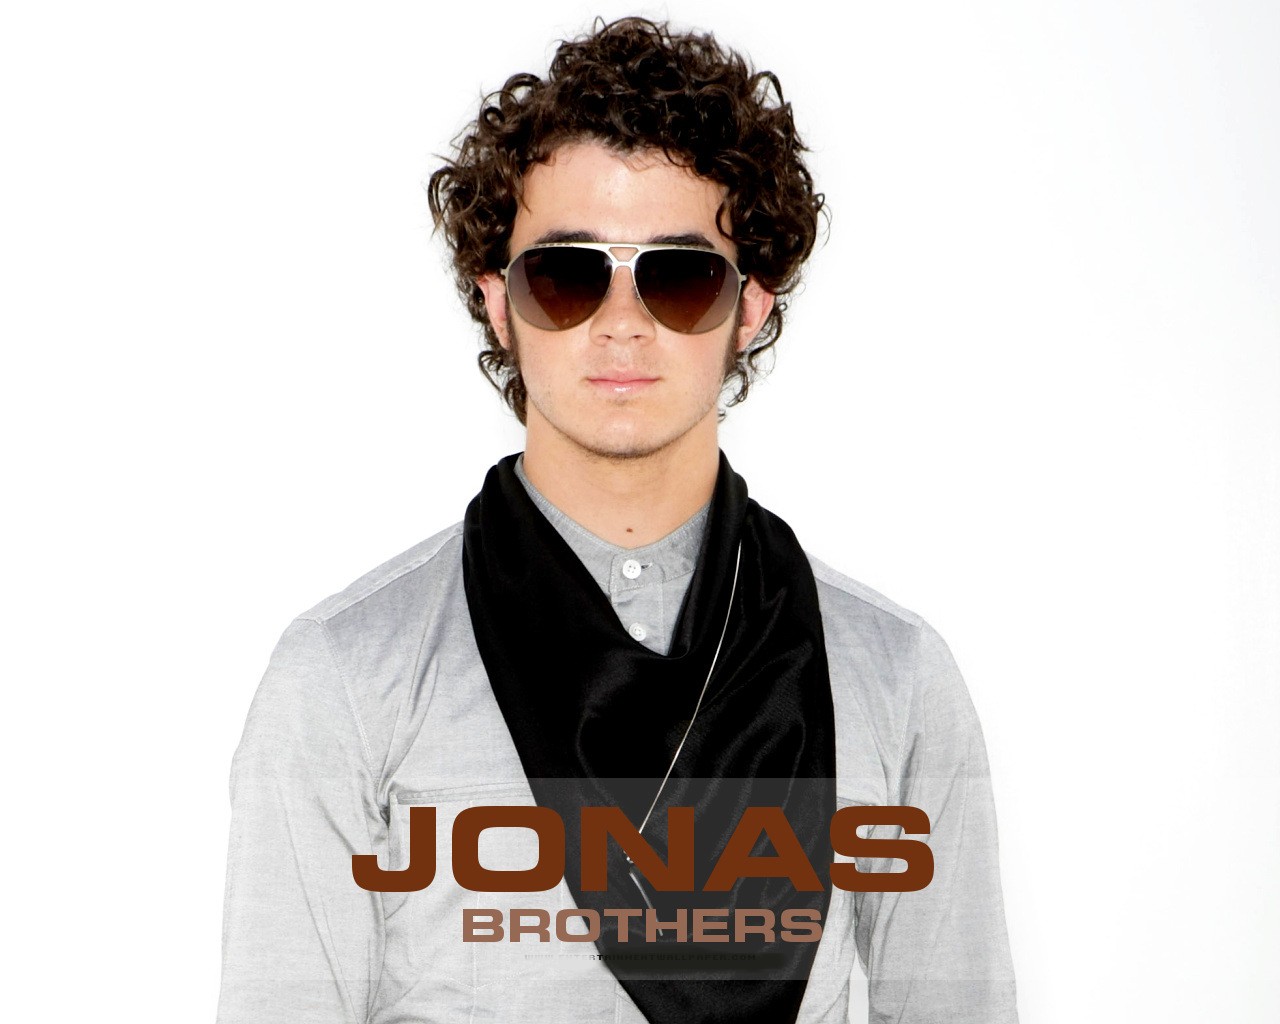 [jonas_brothers11.jpg]